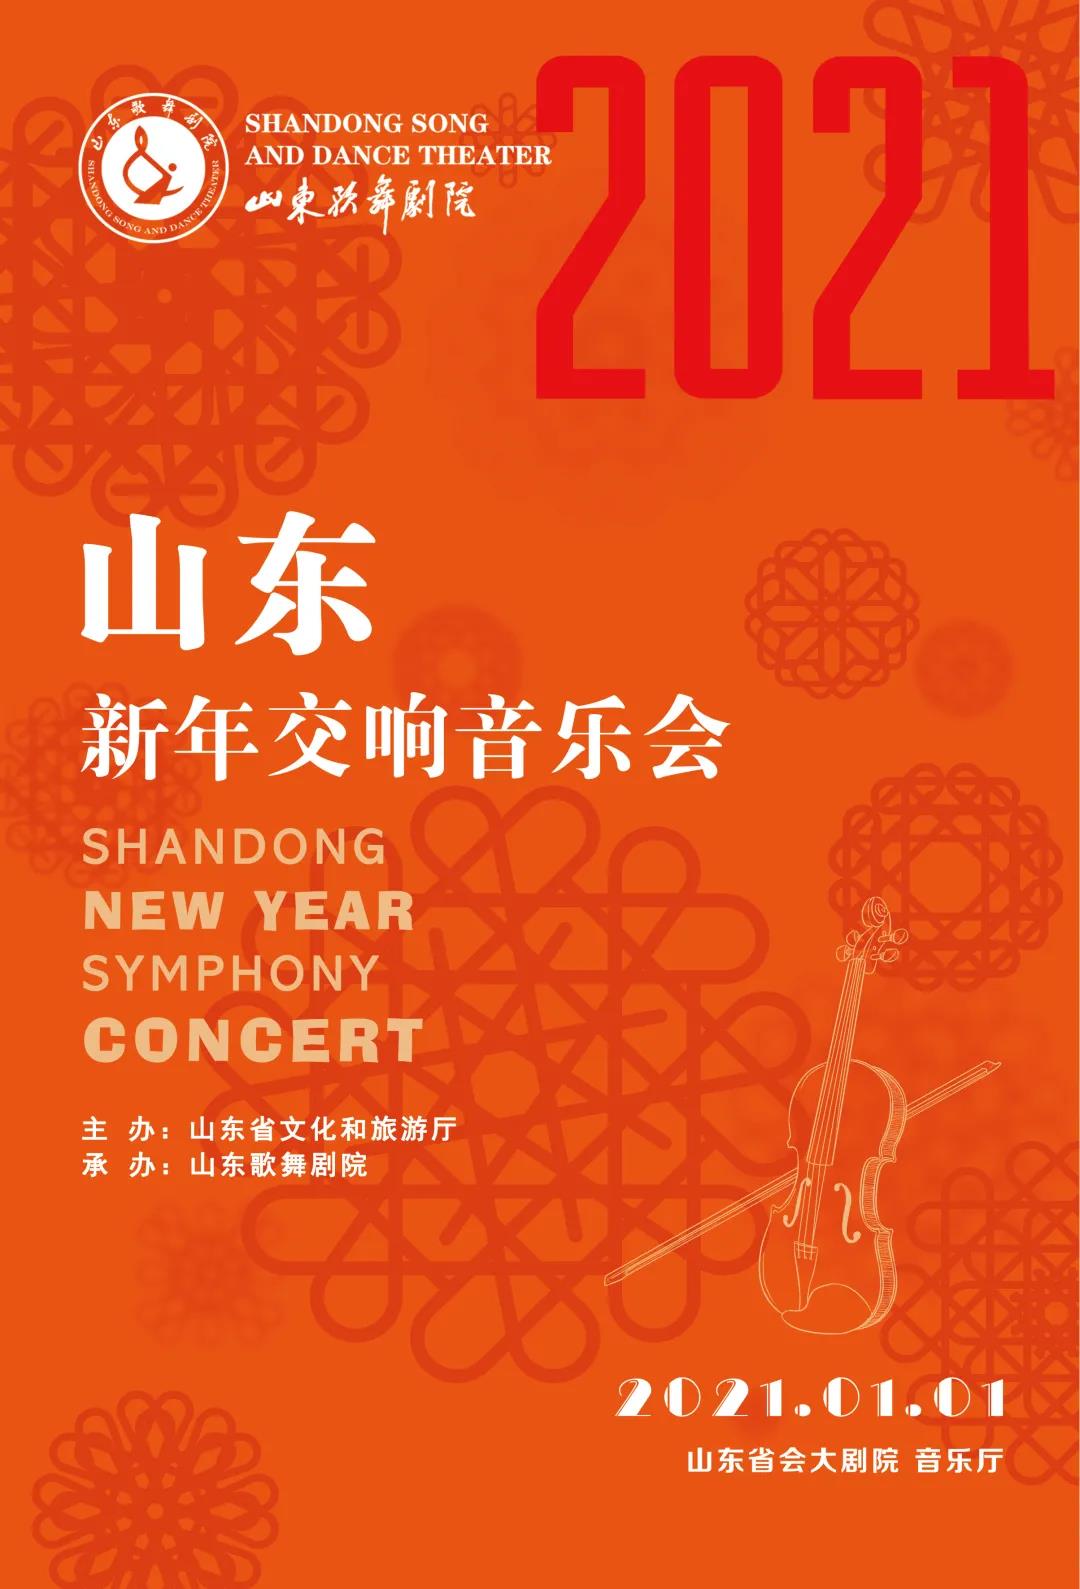 中西合璧，阵容强大——山东新年交响音乐会将于2021年1月1日奏响山东省会大剧院